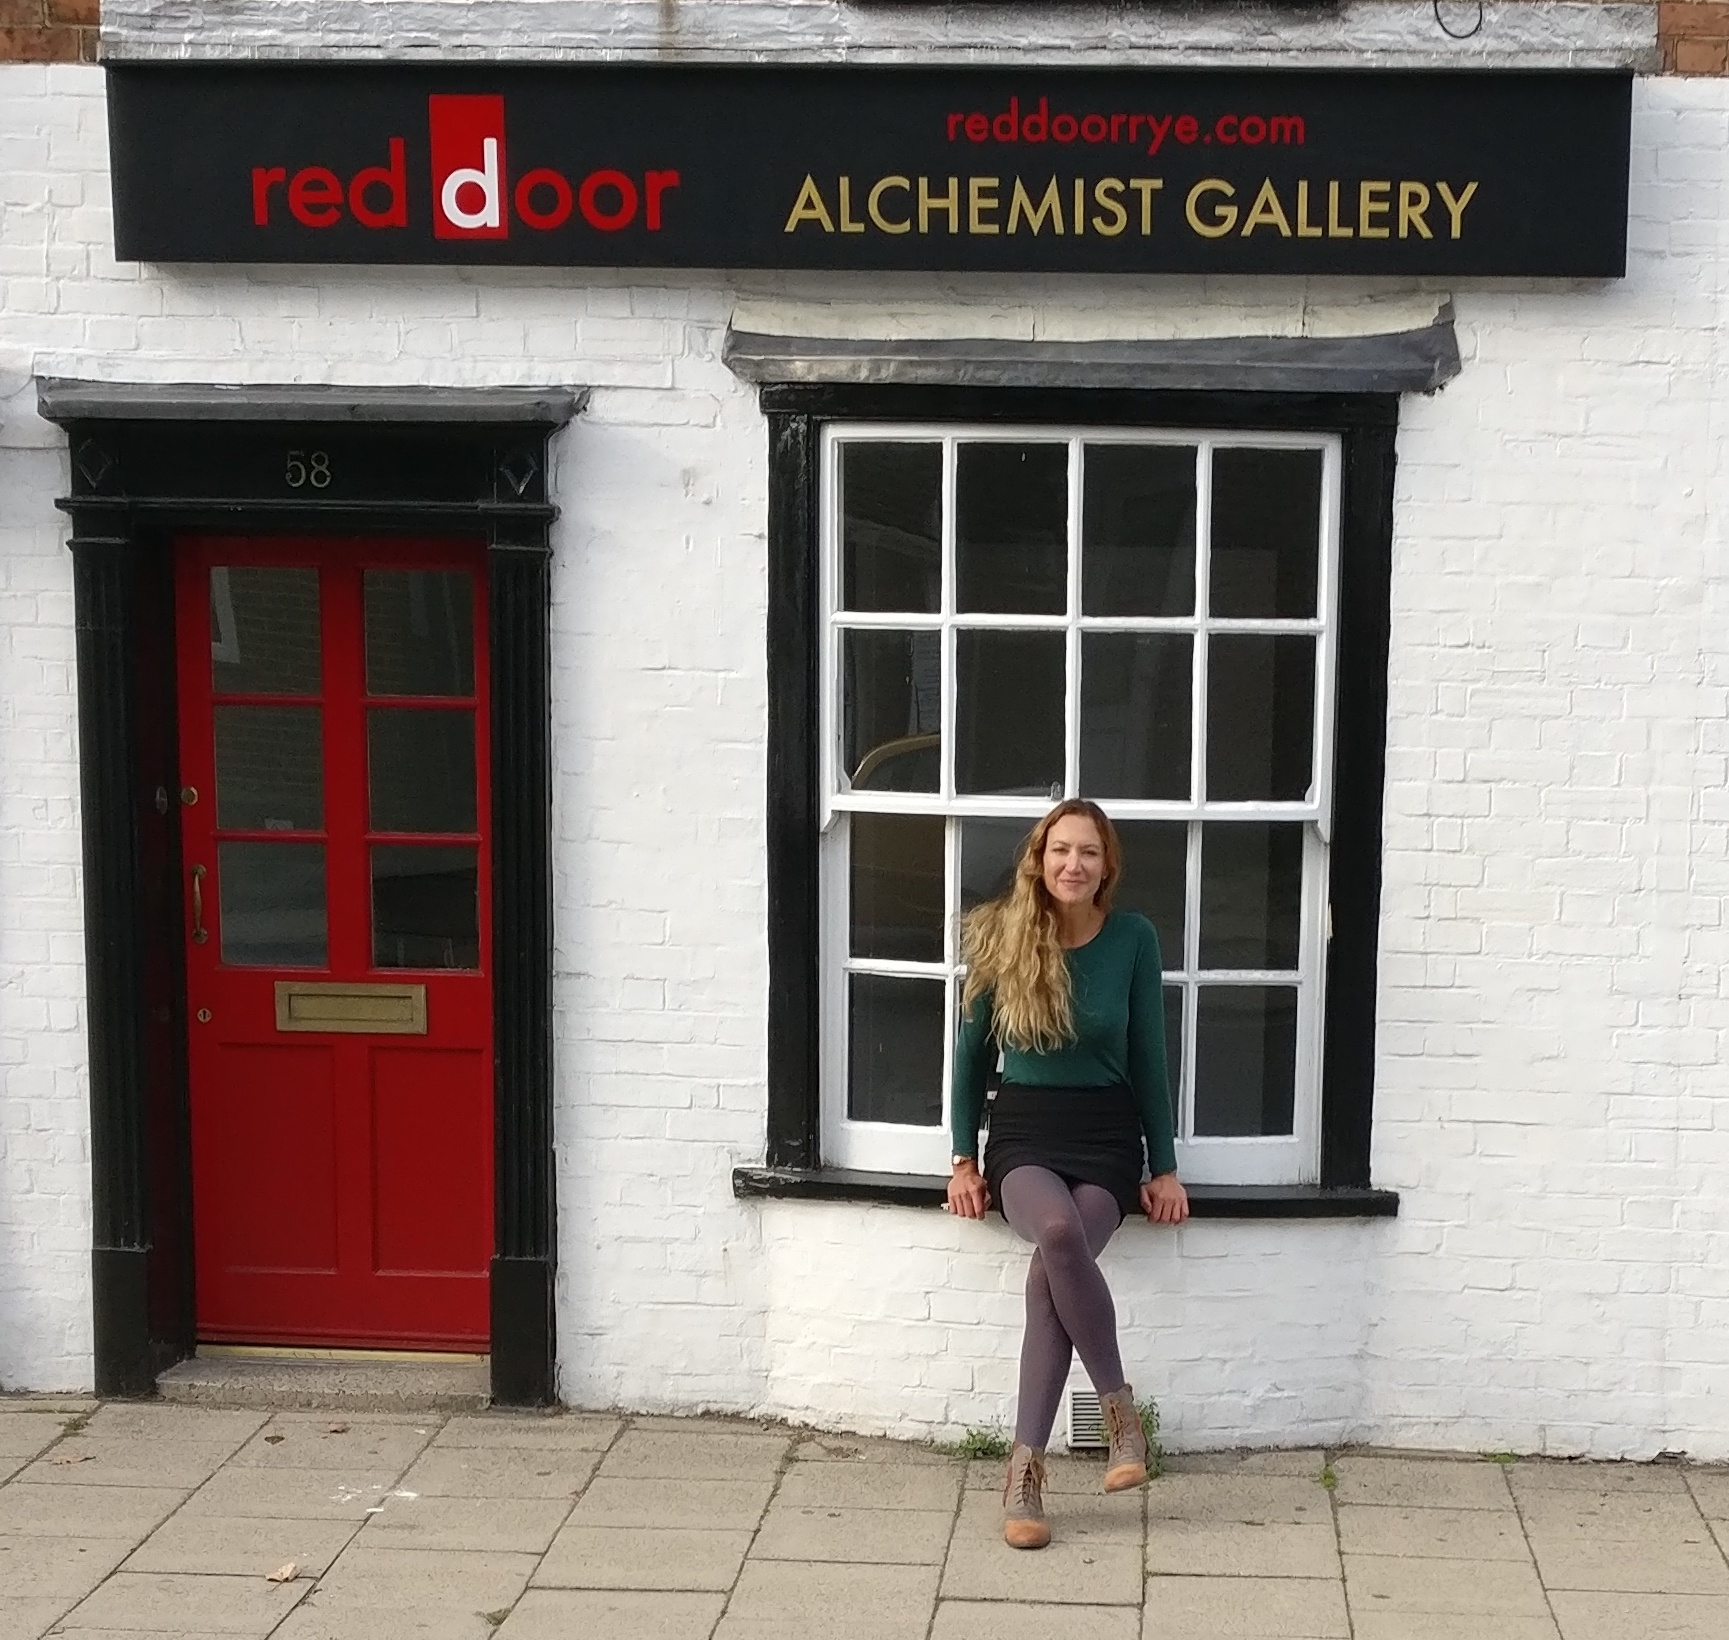 Red Door Alchemist Gallery